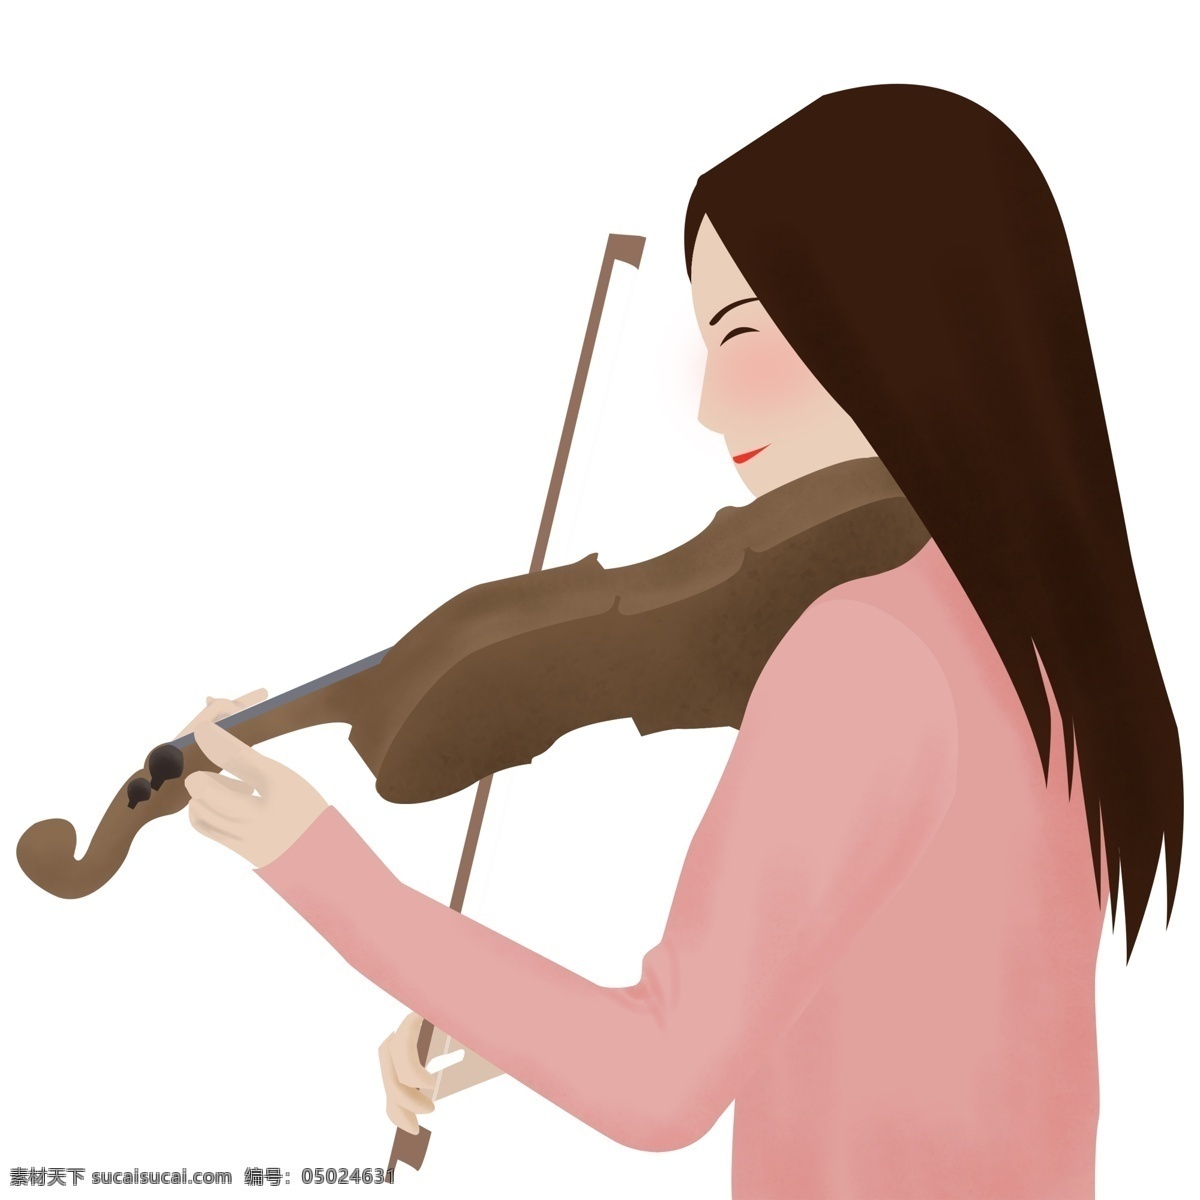 温婉 拉 小提琴 少女 装饰 元素 装饰元素 美丽 弹琴 手绘 演奏 粉衣